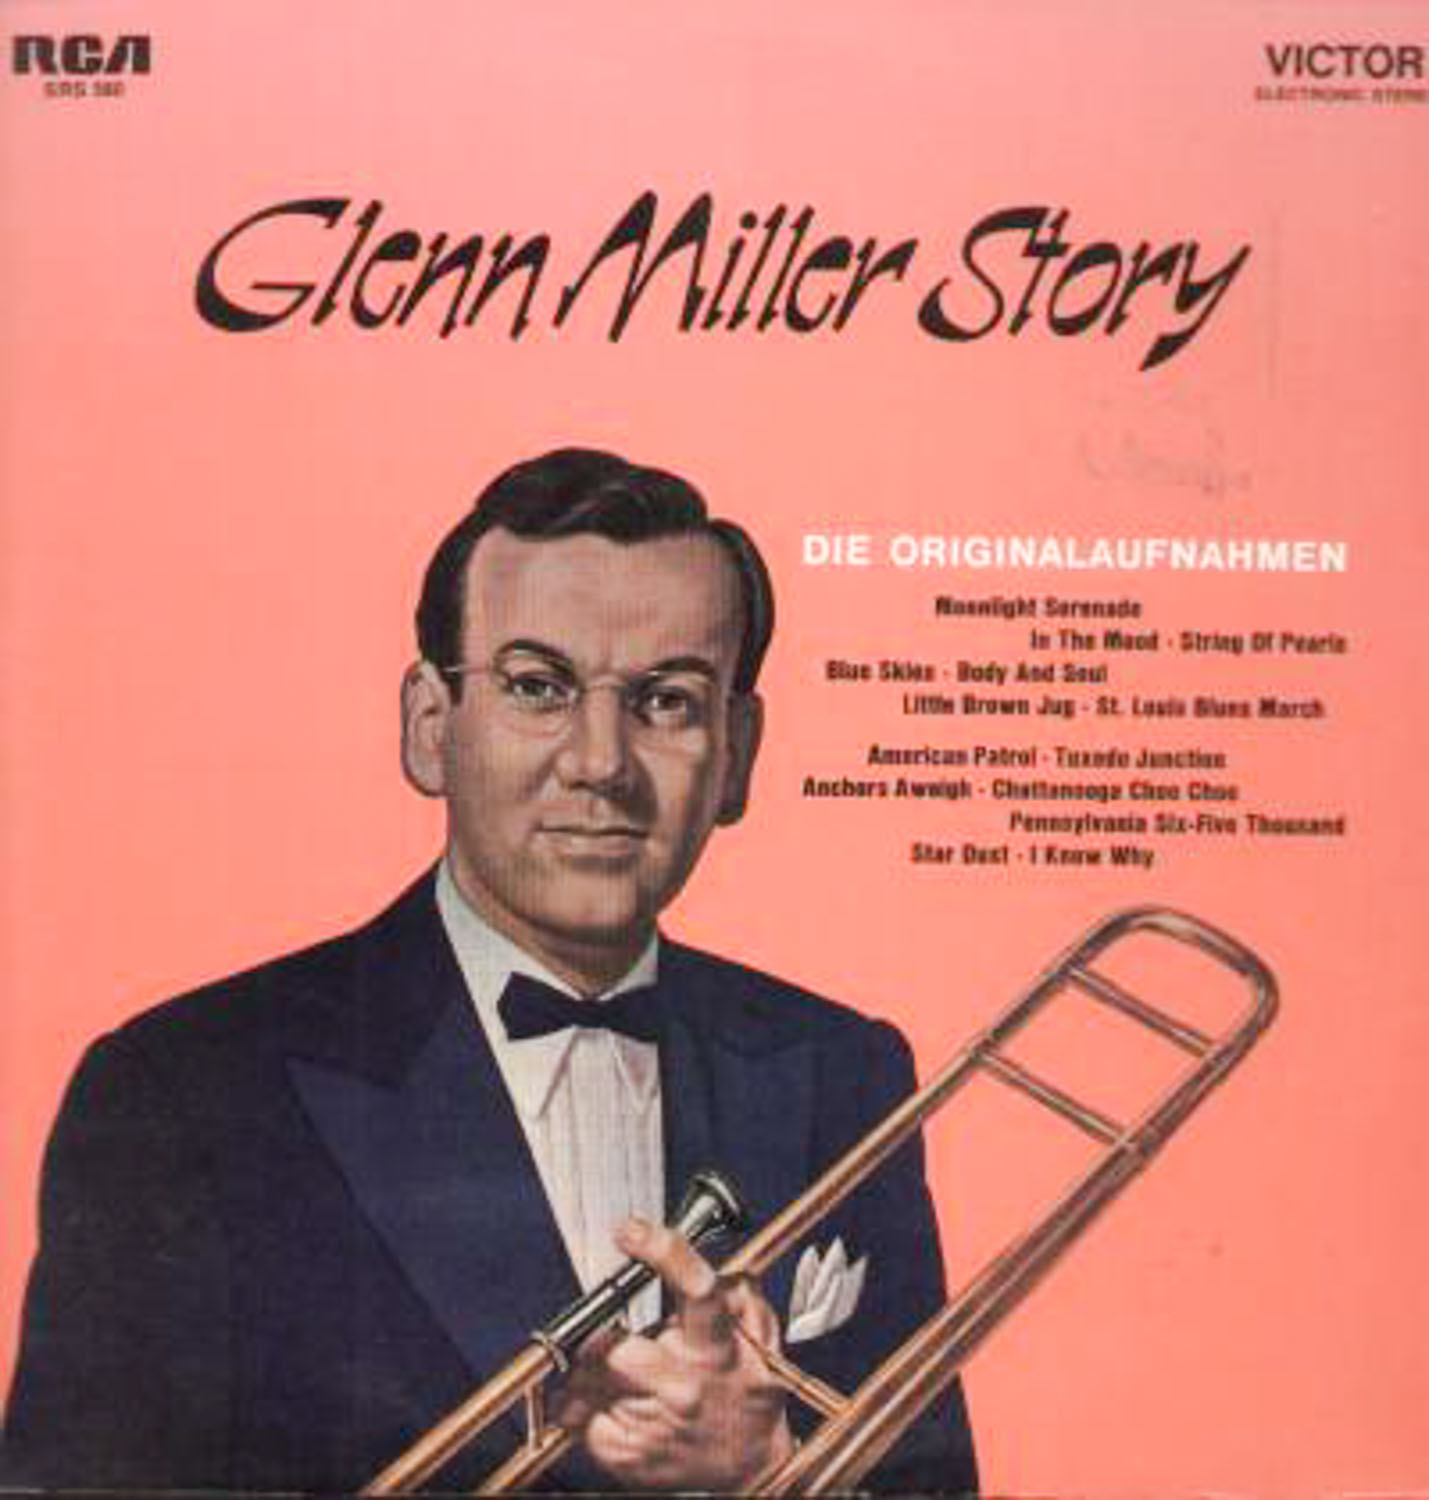 Glenn Miller and his Orchestra  Glenn Miller Story. Die Originalaufnahmen (SRS 560)  *LP 12'' (Vinyl)*. 